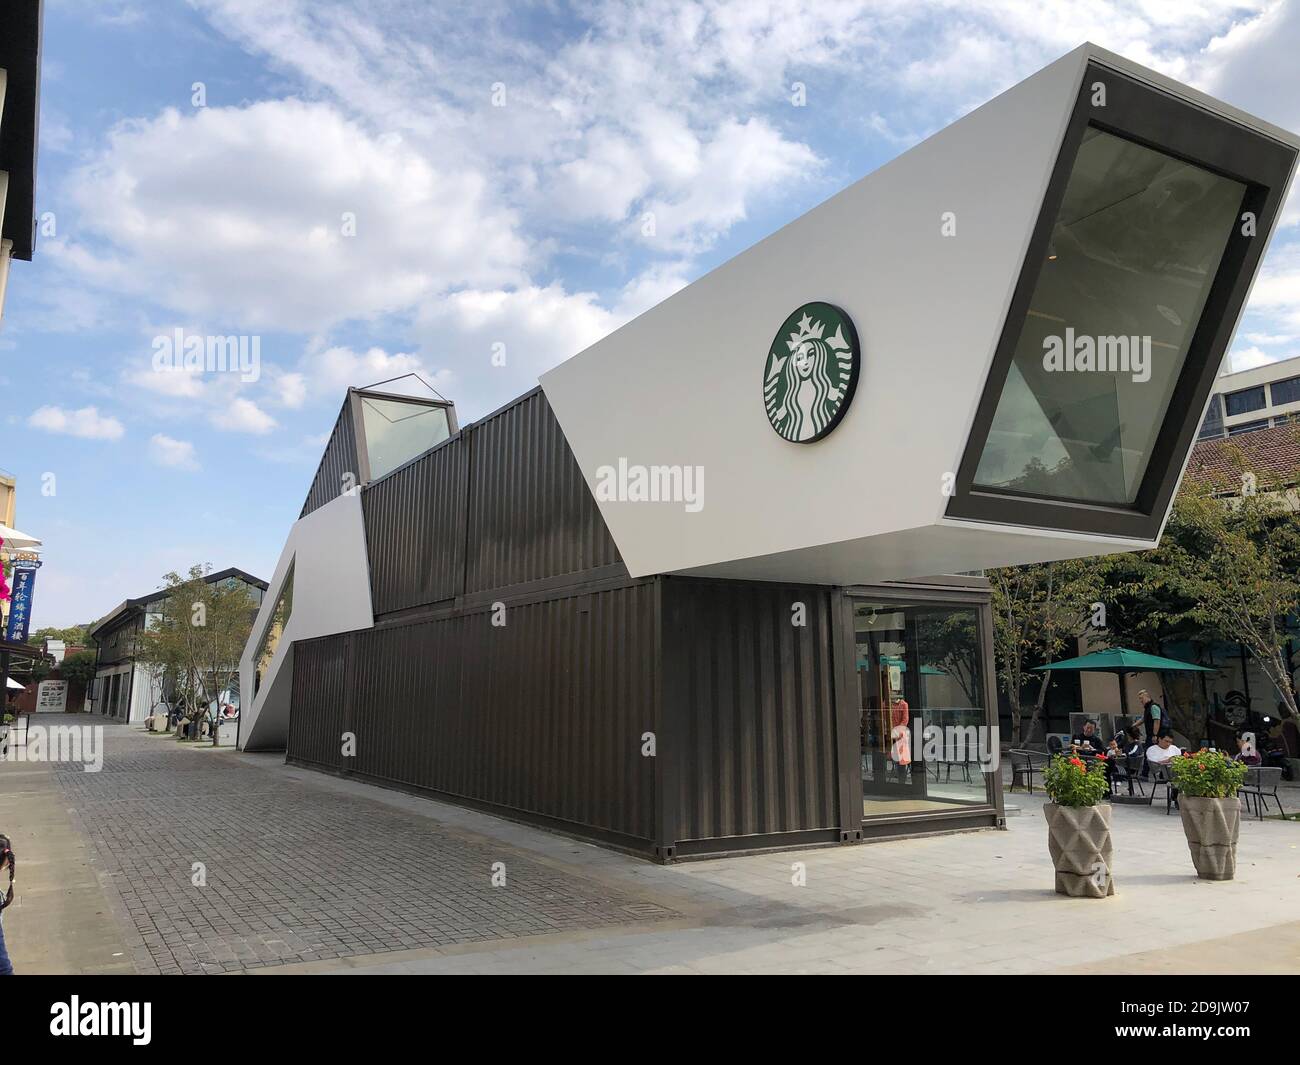 Vue extérieure du premier Starbucks Container concept Store dans le quartier de Baoshan à Shanghai, Chine, 24 octobre 2020. Banque D'Images